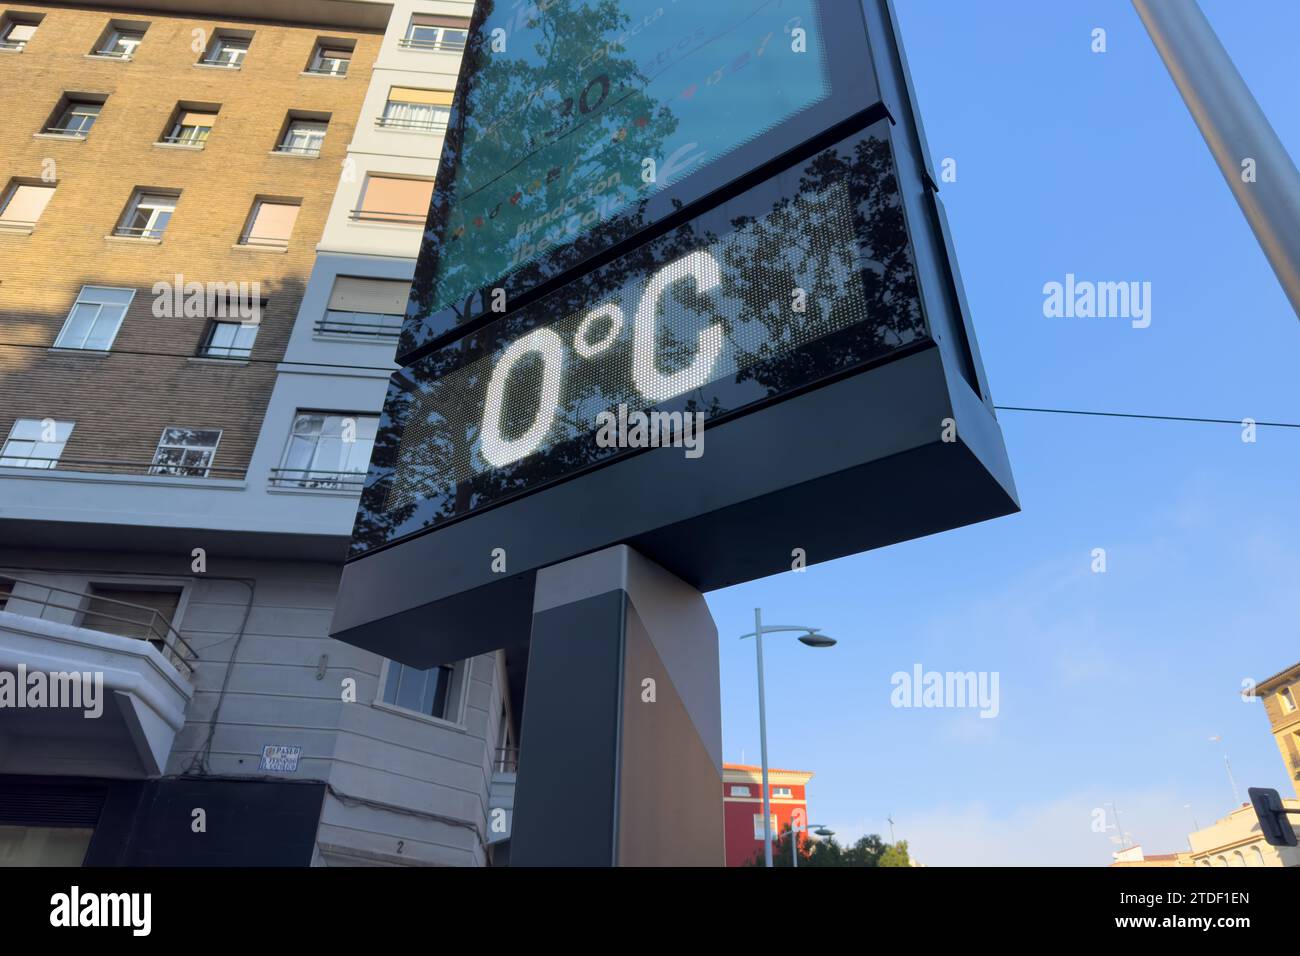 Temperature fredde per le strade di Saragozza, Spagna Foto Stock